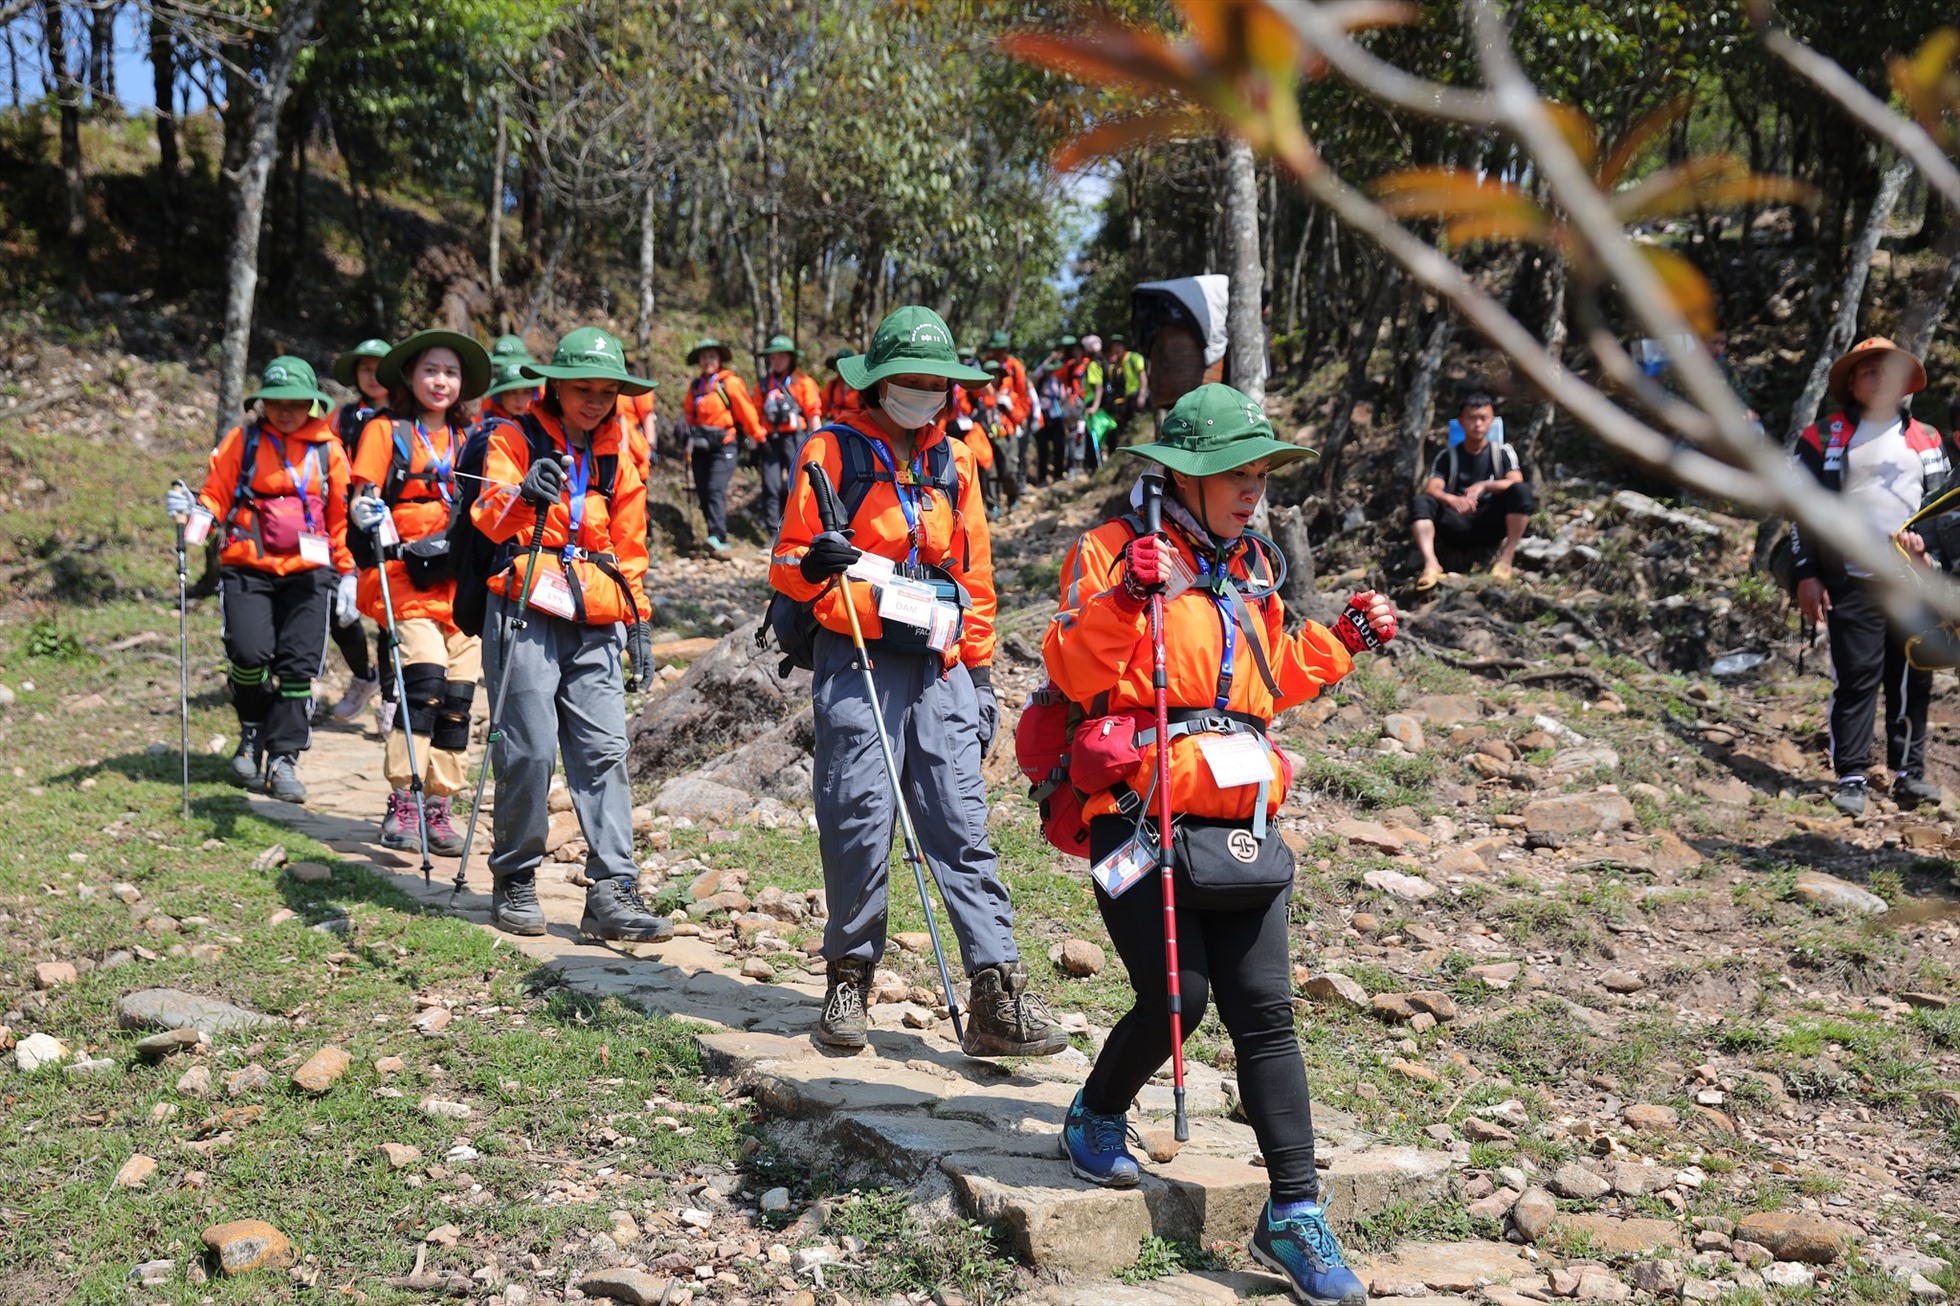 Gần 600 người của đoàn leo núi đã vượt qua 22km đường rừng để chinh phục thành công “Nóc nhà Đông Dương”. Ảnh: NVCC